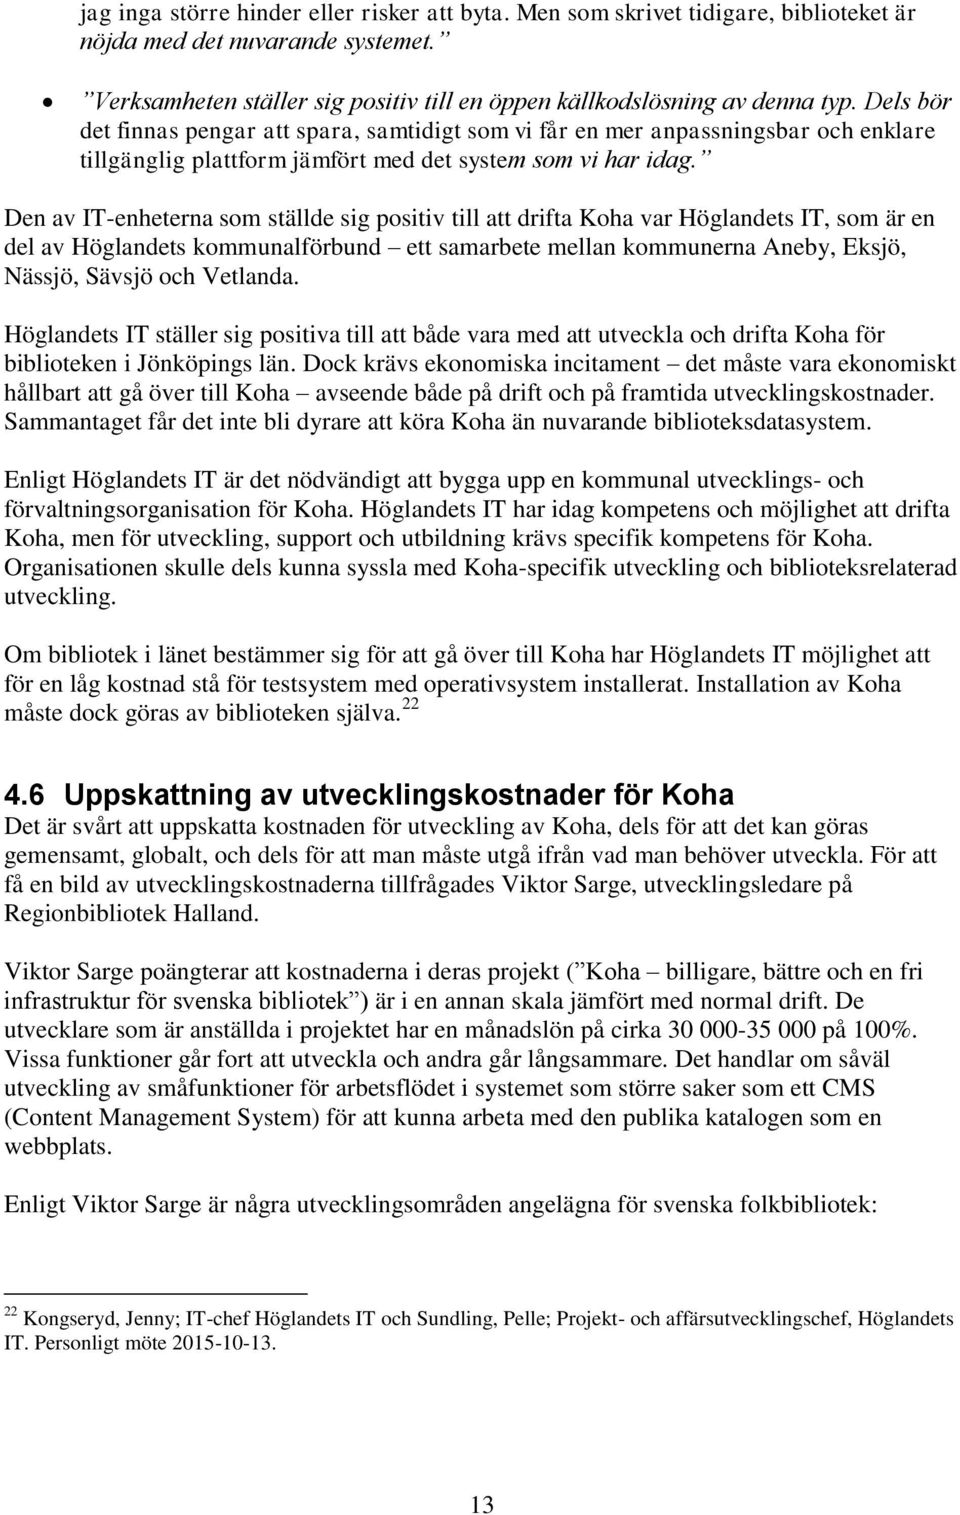 Den av IT-enheterna som ställde sig positiv till att drifta Koha var Höglandets IT, som är en del av Höglandets kommunalförbund ett samarbete mellan kommunerna Aneby, Eksjö, Nässjö, Sävsjö och